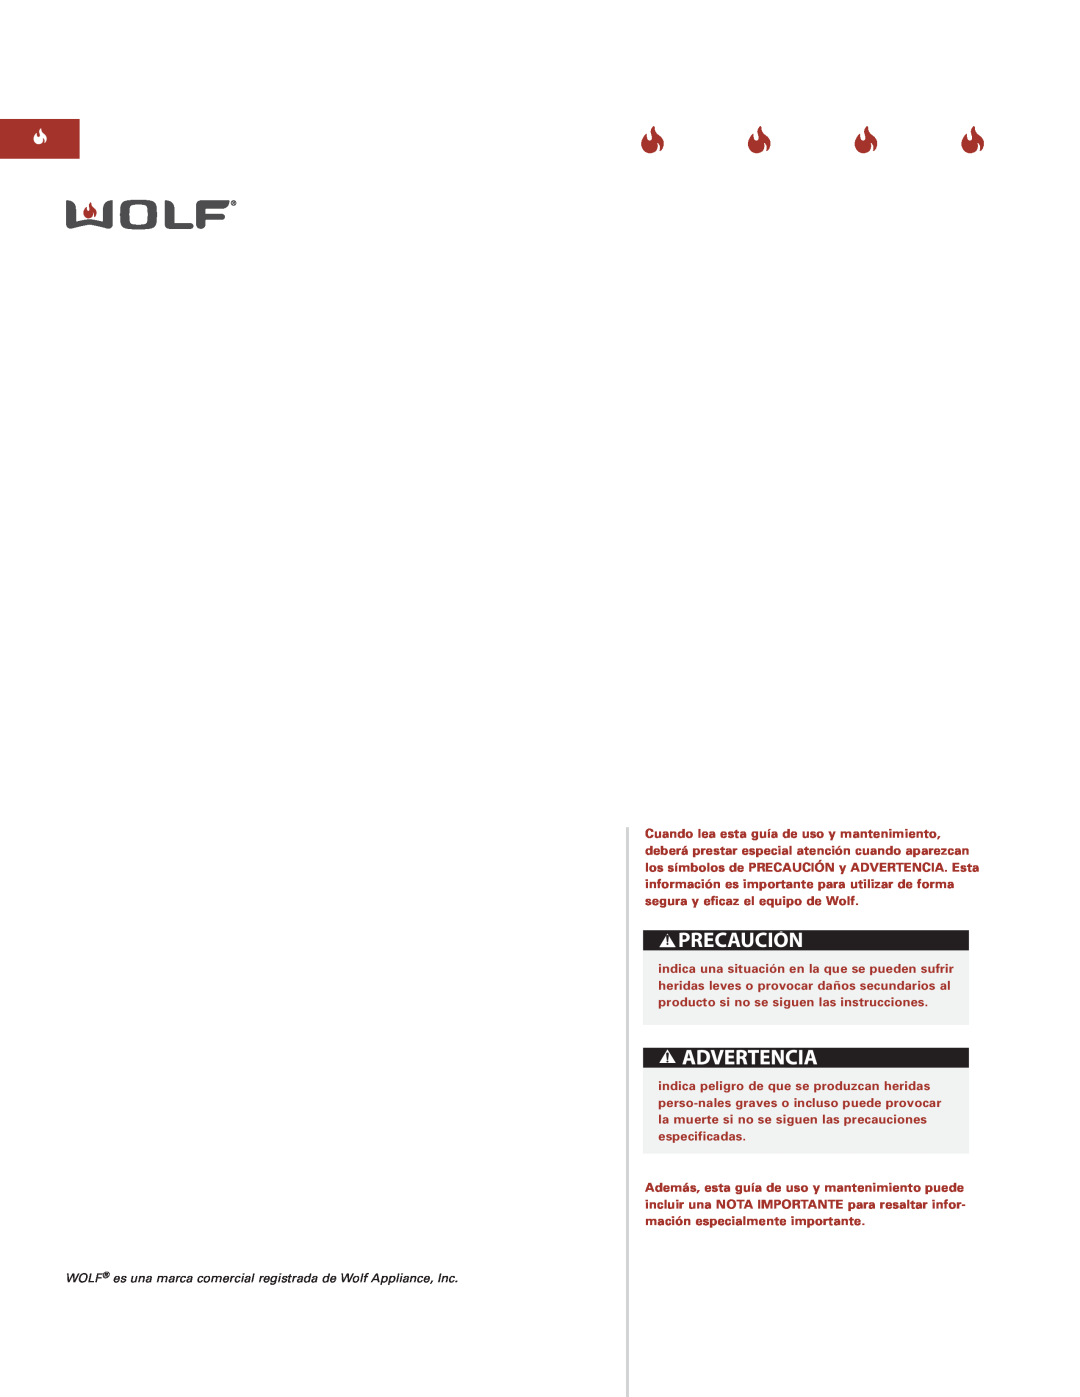 Sub-Zero ICBCT15G manual Precaución, WOLF es una marca comercial registrada de Wolf Appliance, Inc 